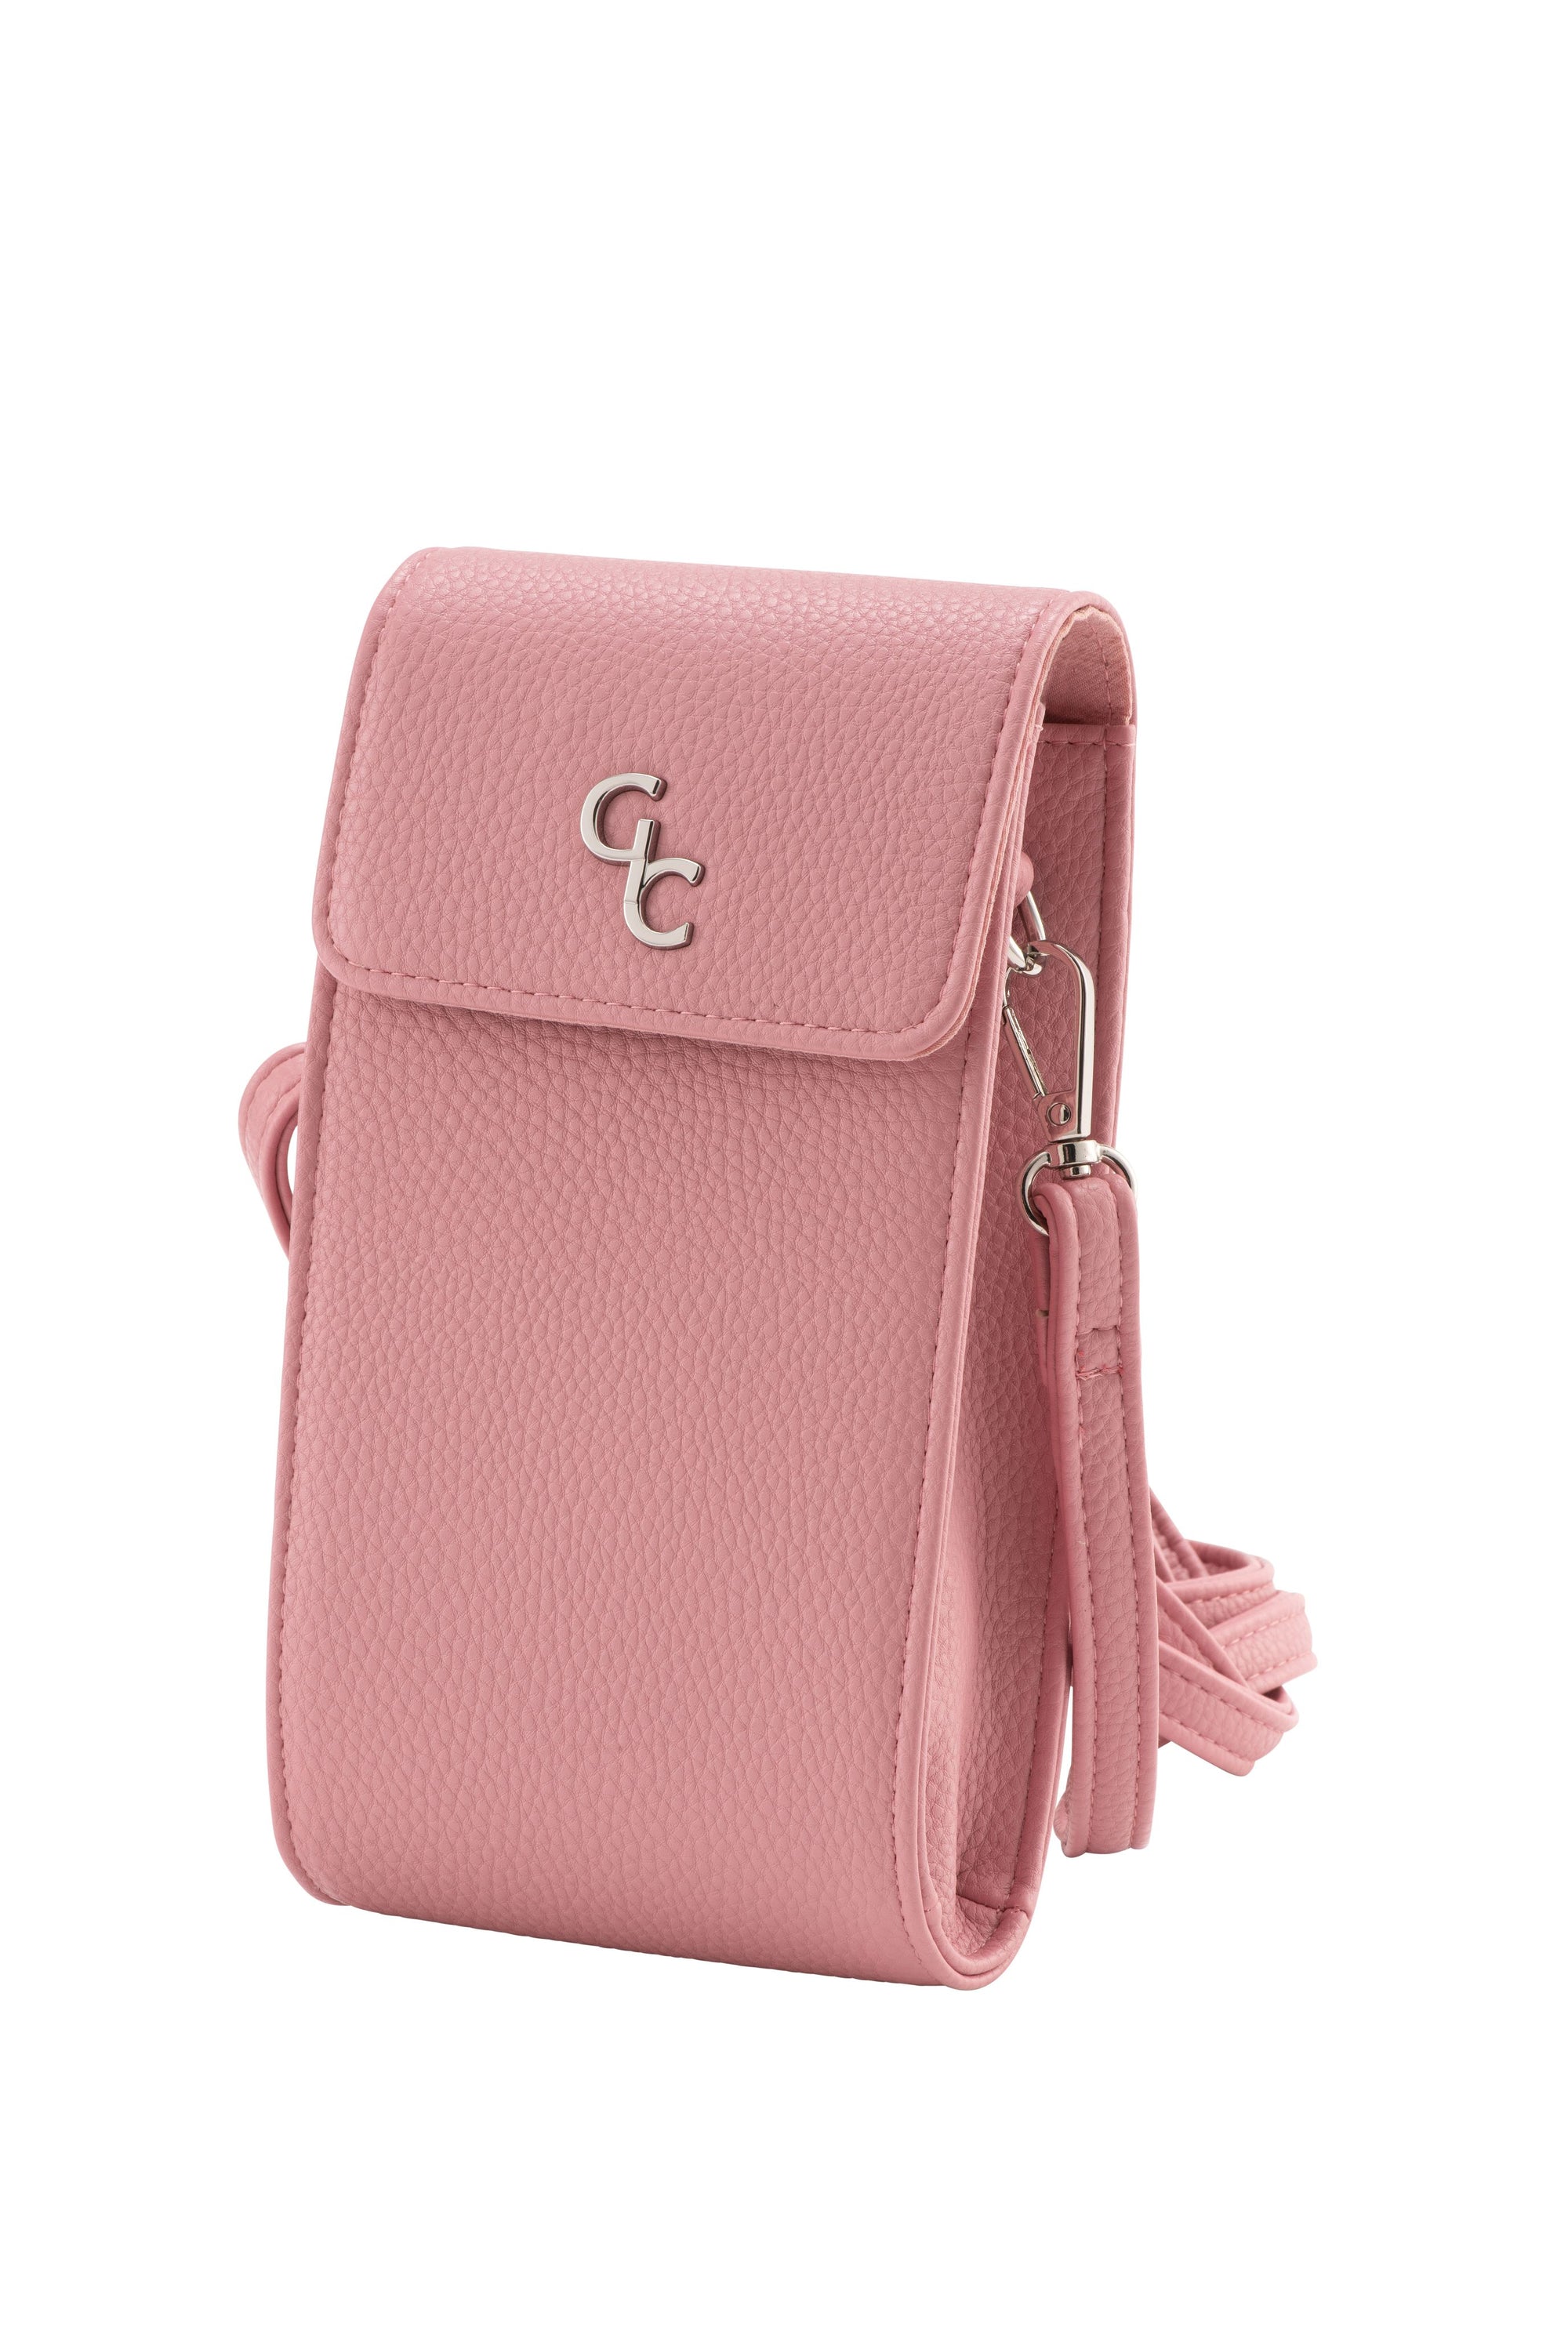 Mini Cross Body Bag - Rose Pink